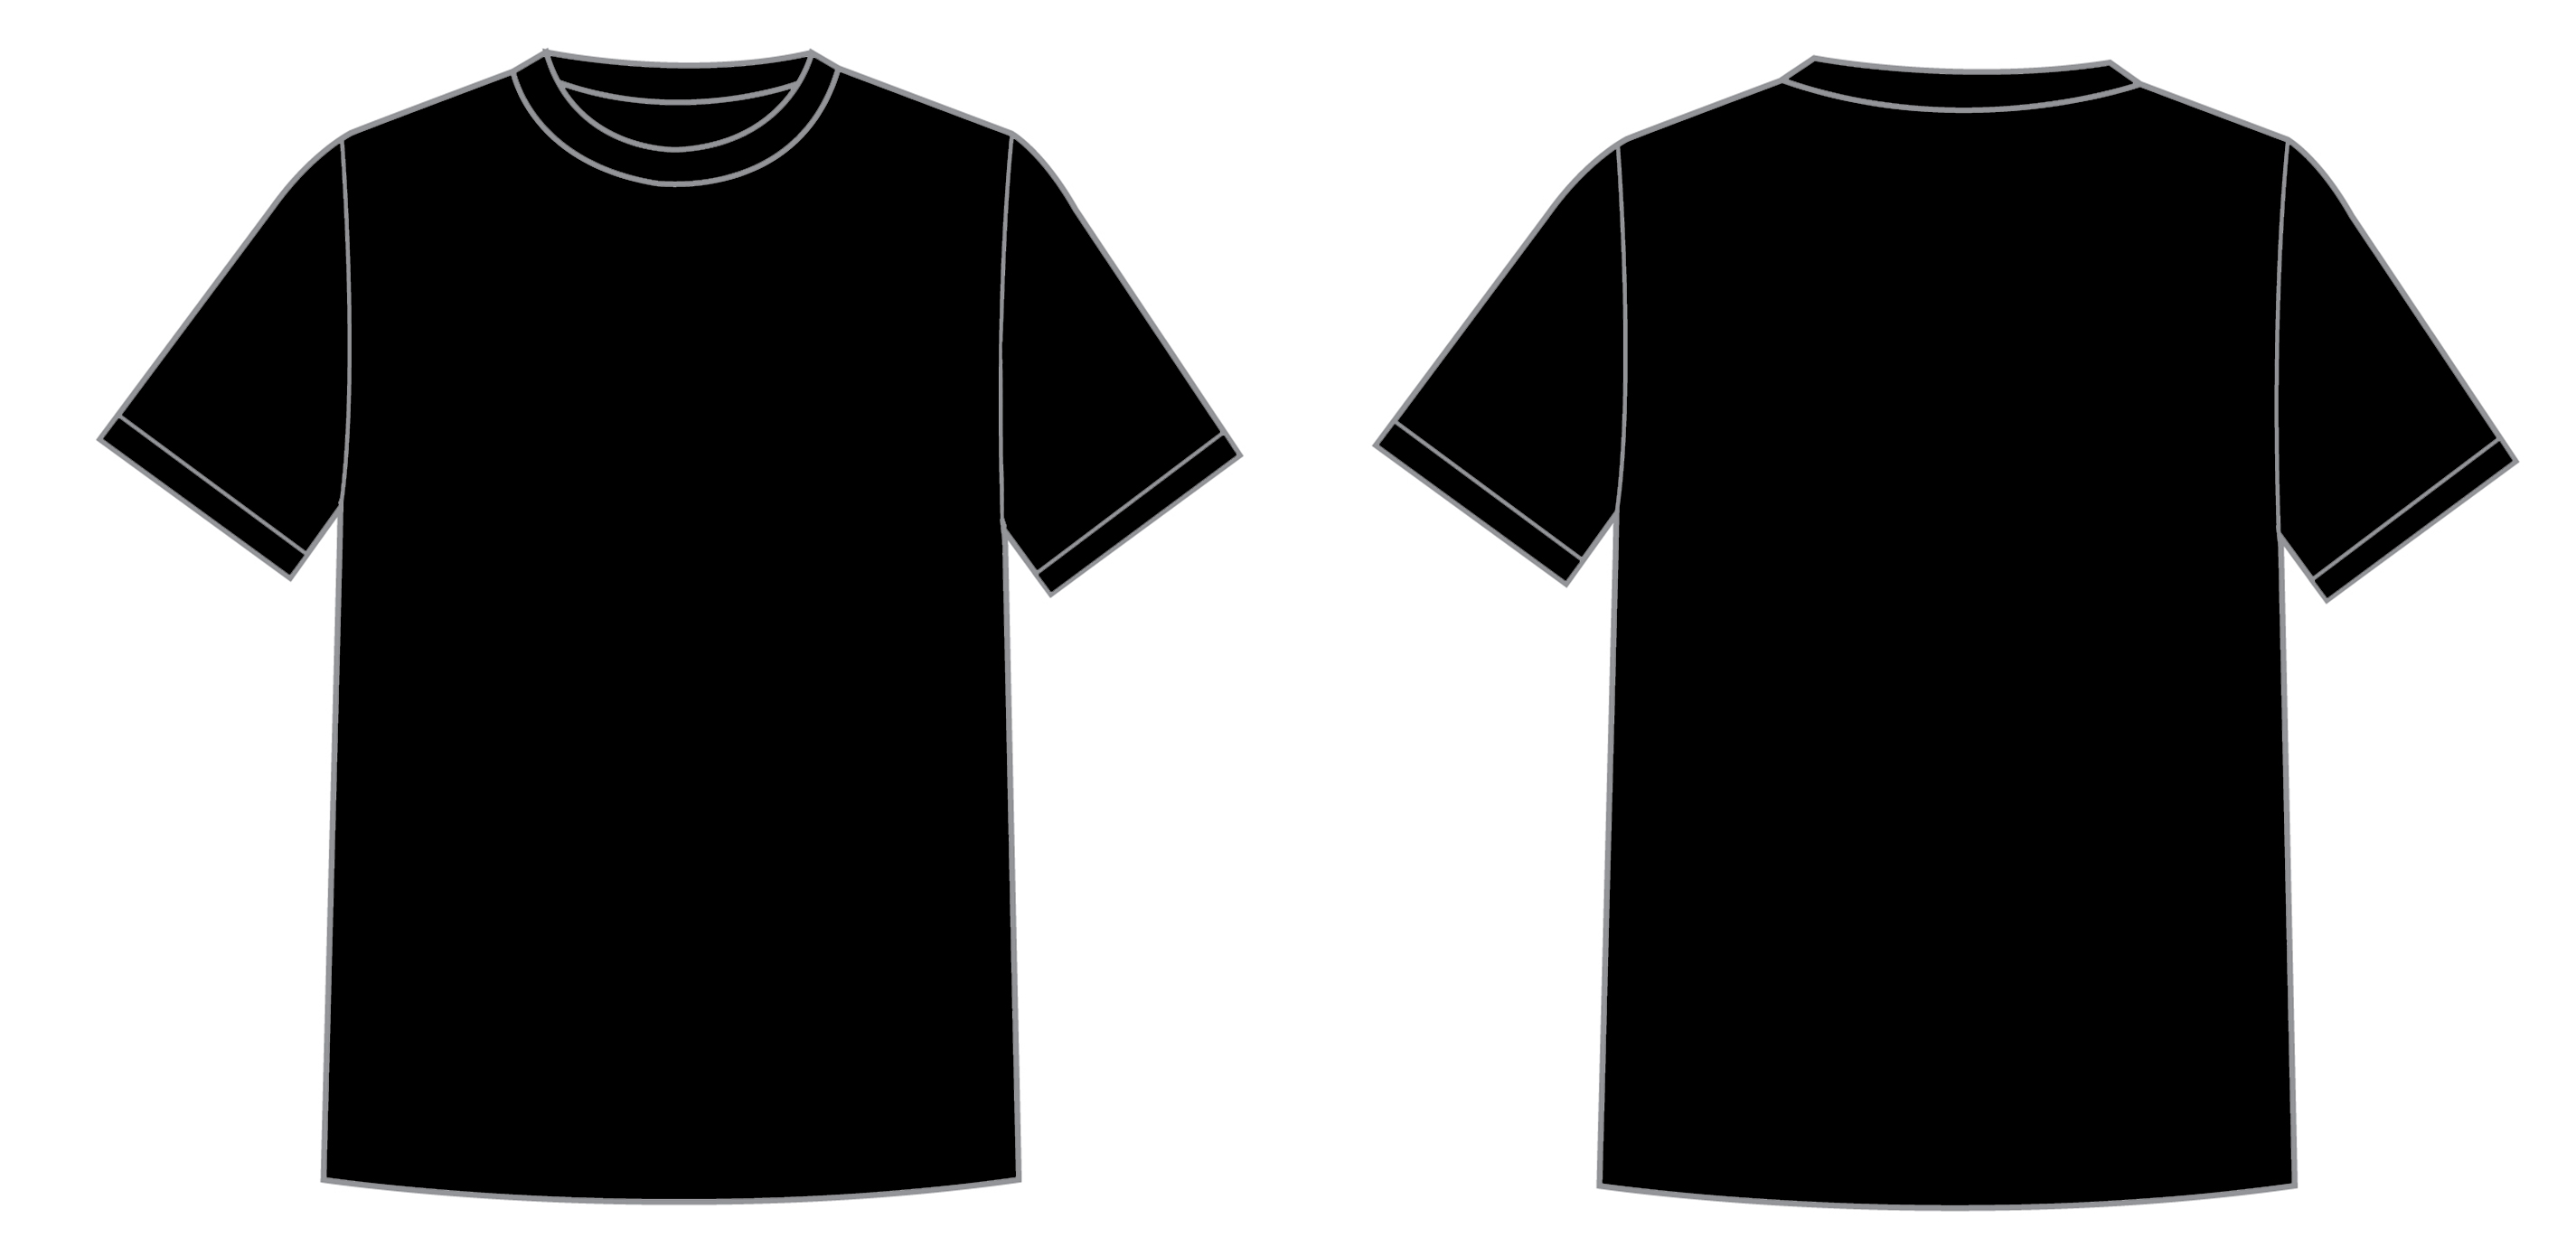 Blank T Shirt Template ClipArt Best